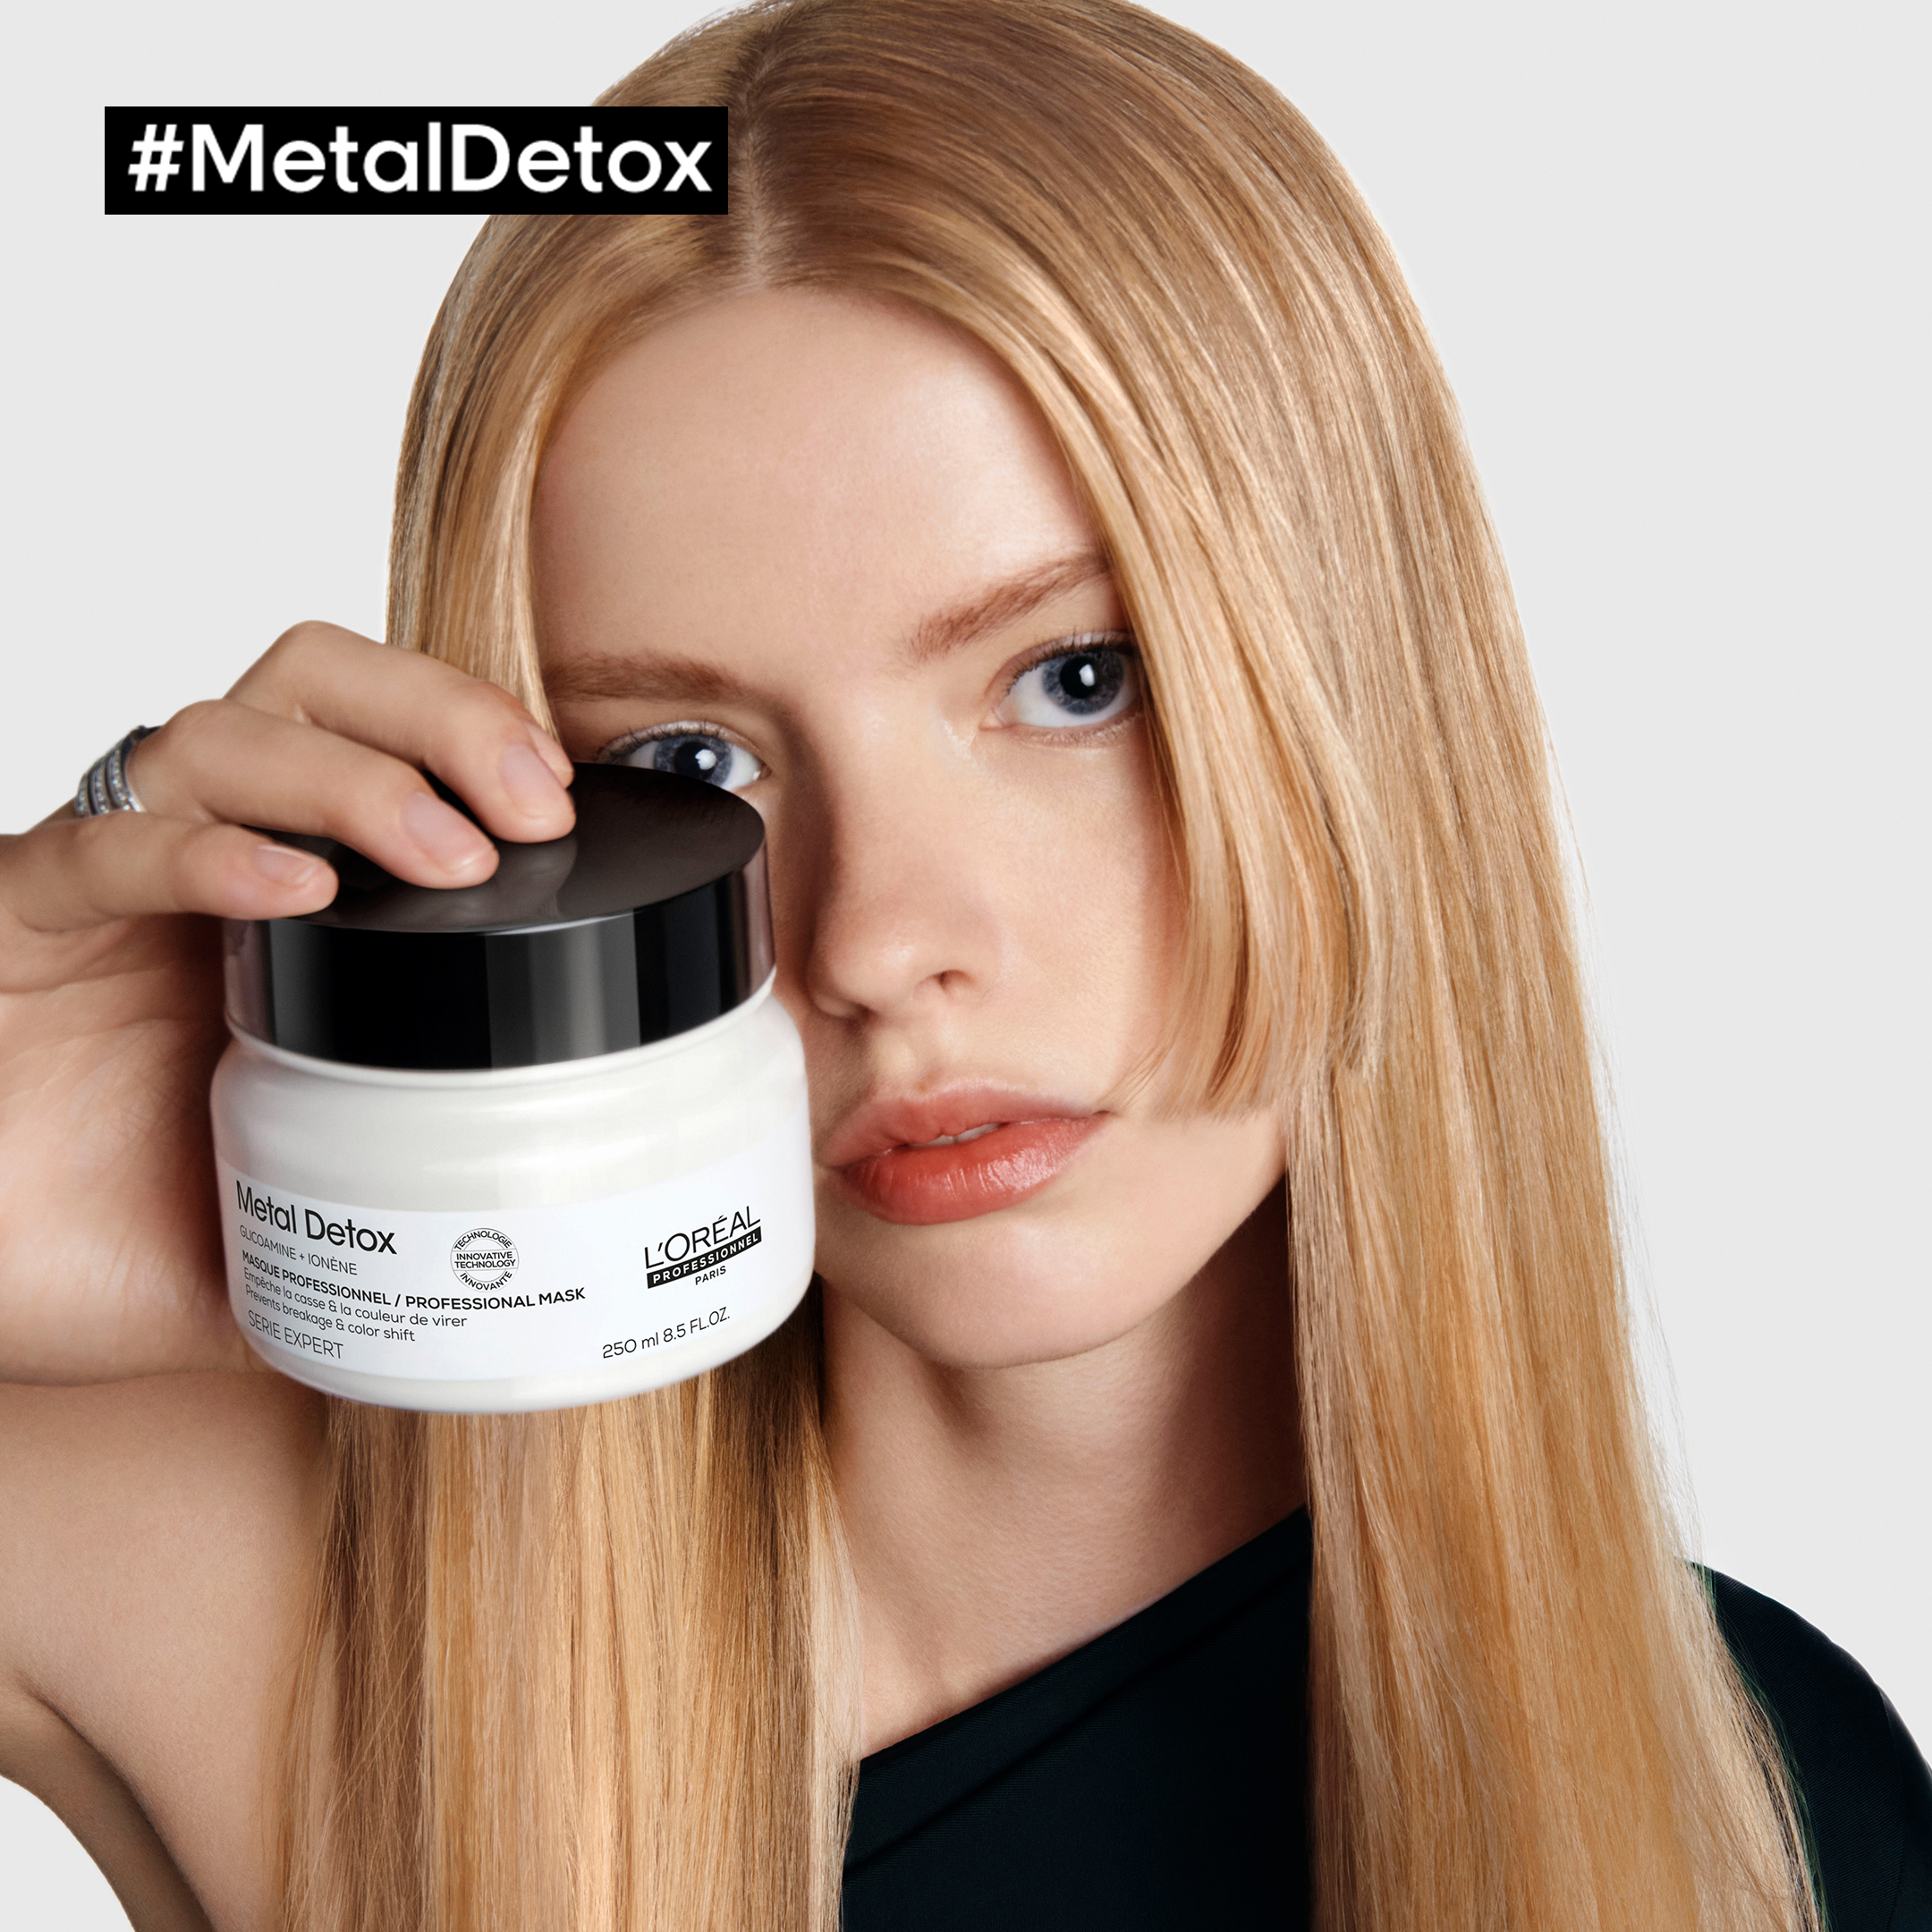 Metal detox